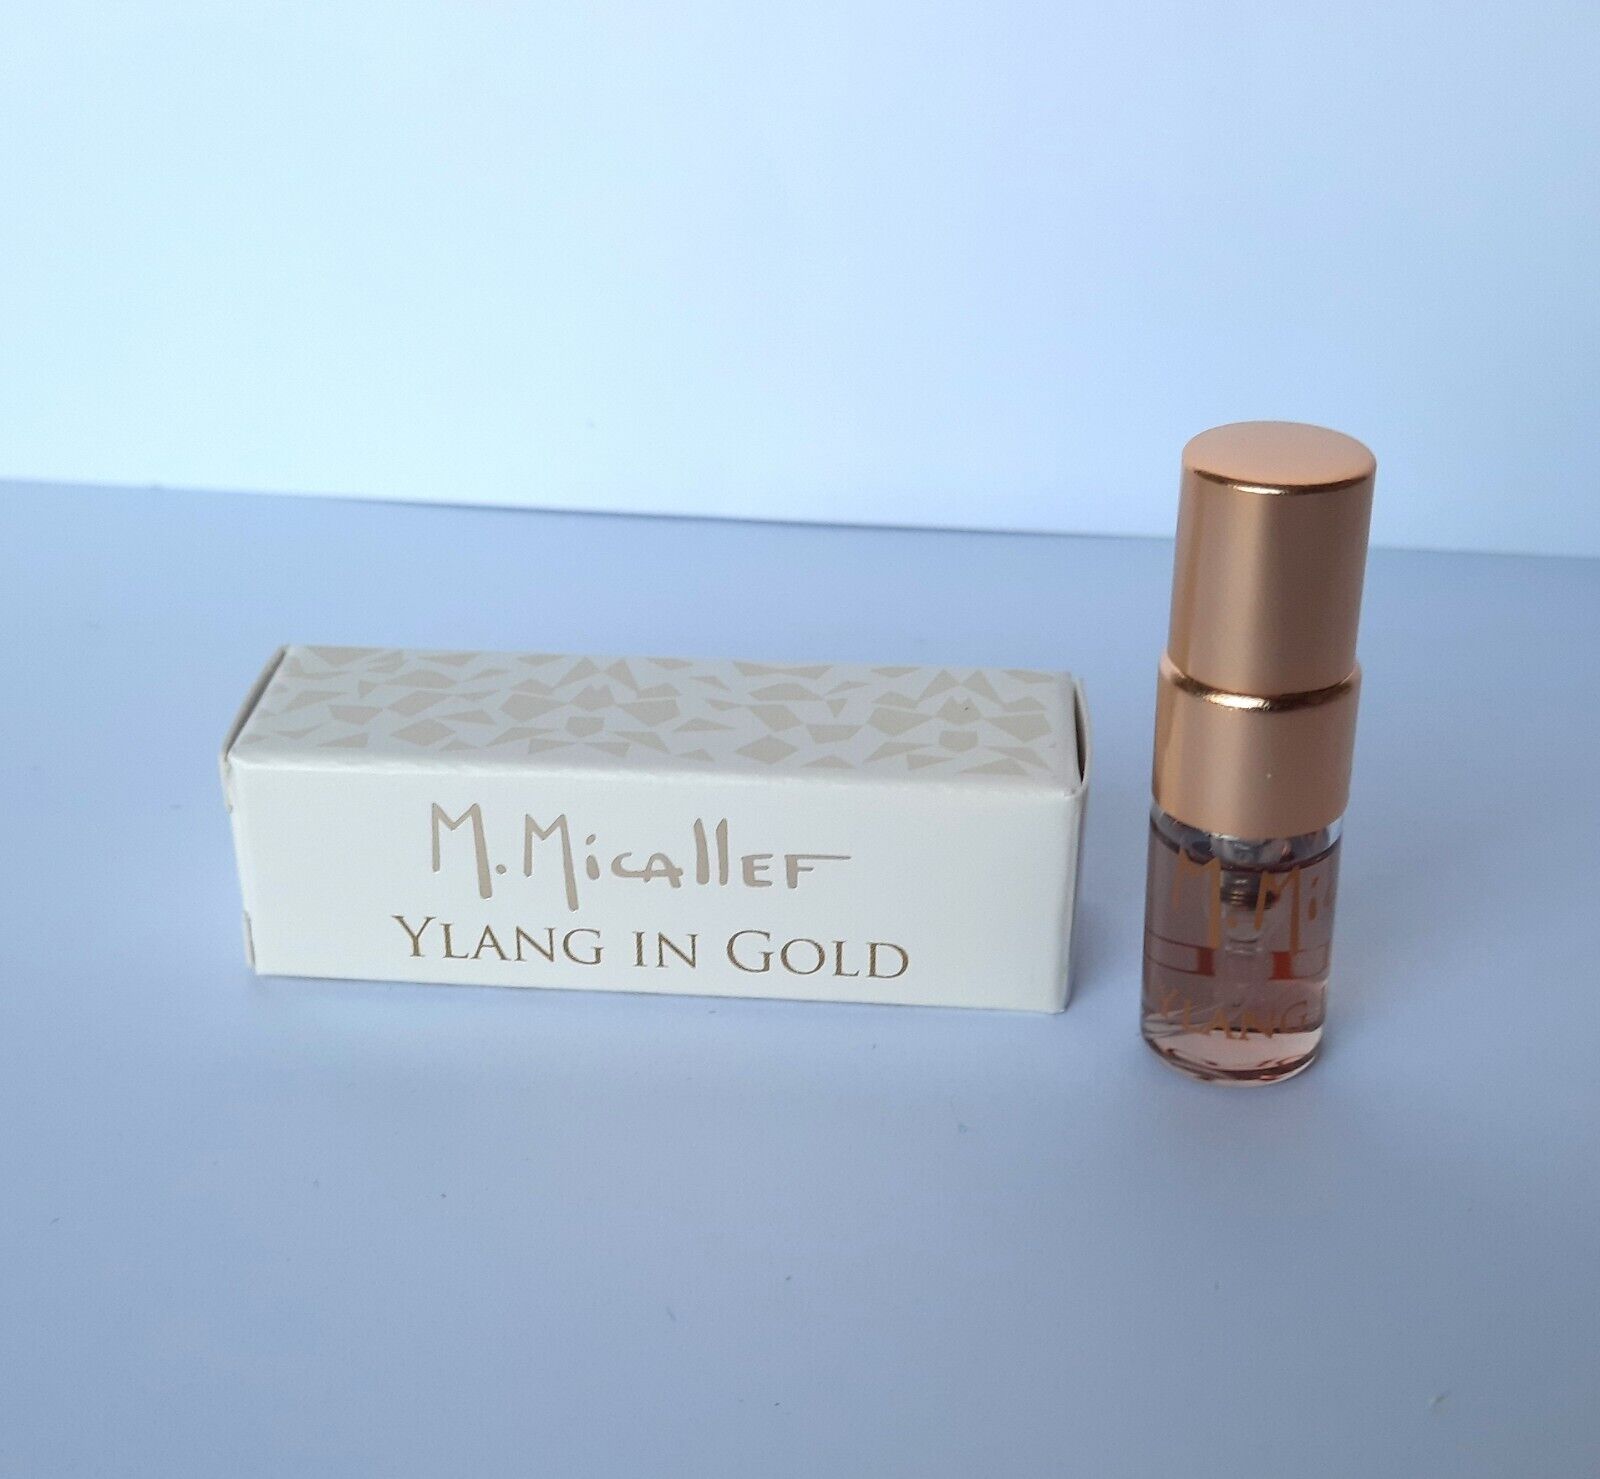 M. Micallef Ylang in Gold 2ml 0.06 Fl. Oz. oficiální vzorek parfému